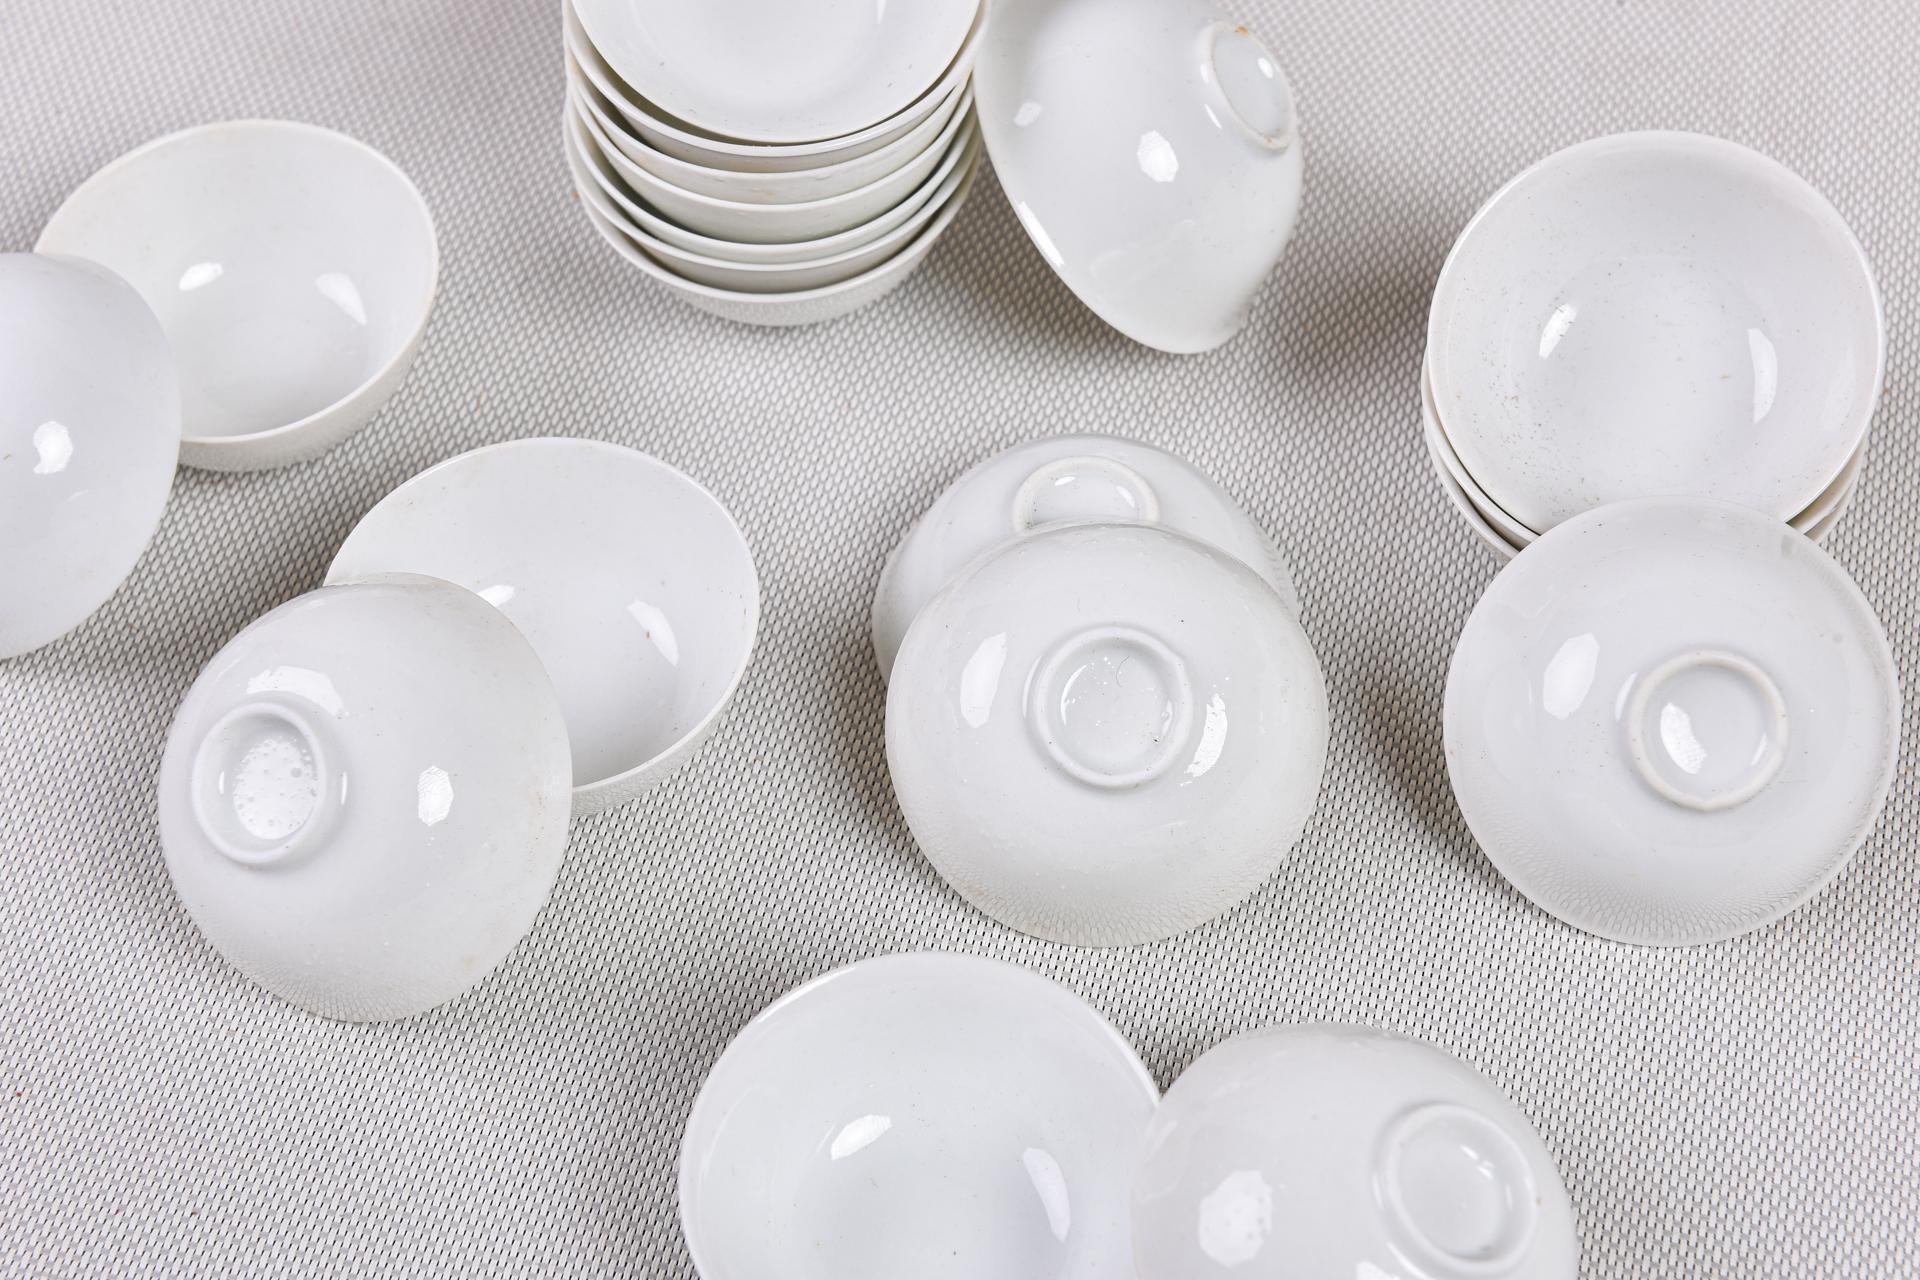 Petits bols en porcelaine blanche très fine : de Chine ou du Japon (je ne sais pas) qui peuvent être de petites soucoupes.
Ils sont 180 ! tous parfaits. Je l'ai gardé pour moi pendant quarante ans, mais je ne l'ai jamais utilisé. Ils sont très